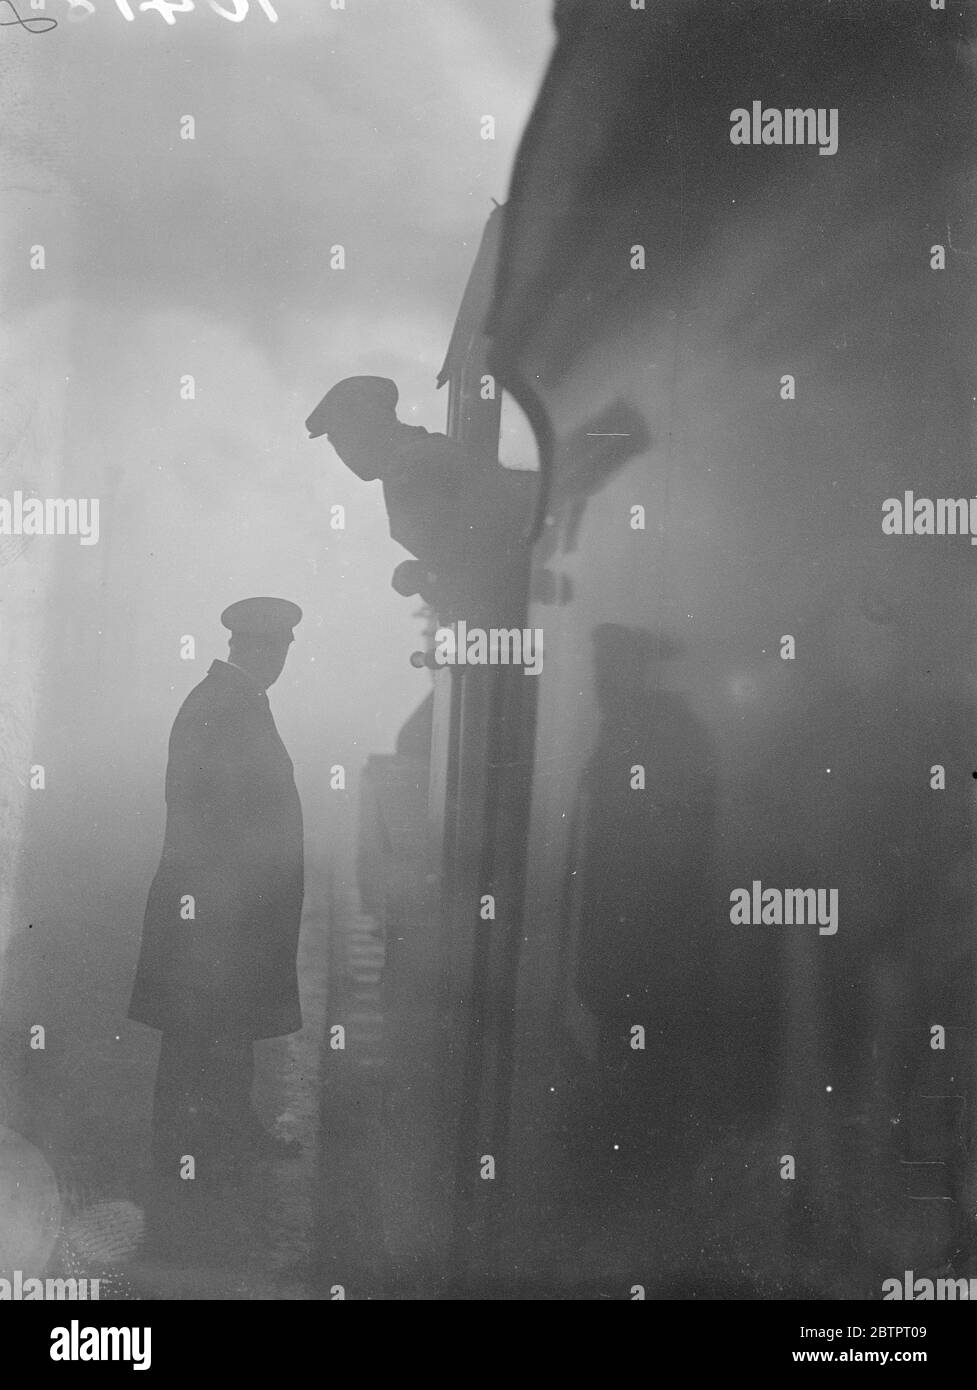 Nebel verlangsamt sich, London. Tausende Londoner wurden auf ihrem Weg zur Arbeit durch den dichten weißen Nebel, der die Transportdienste legte, aufgehalten. Foto zeigt, ein Motorfahrer, der mit einem Wächter am Bahnhof Liverpool Street über den Nebel diskutiert. 18. Oktober 1937 Stockfoto